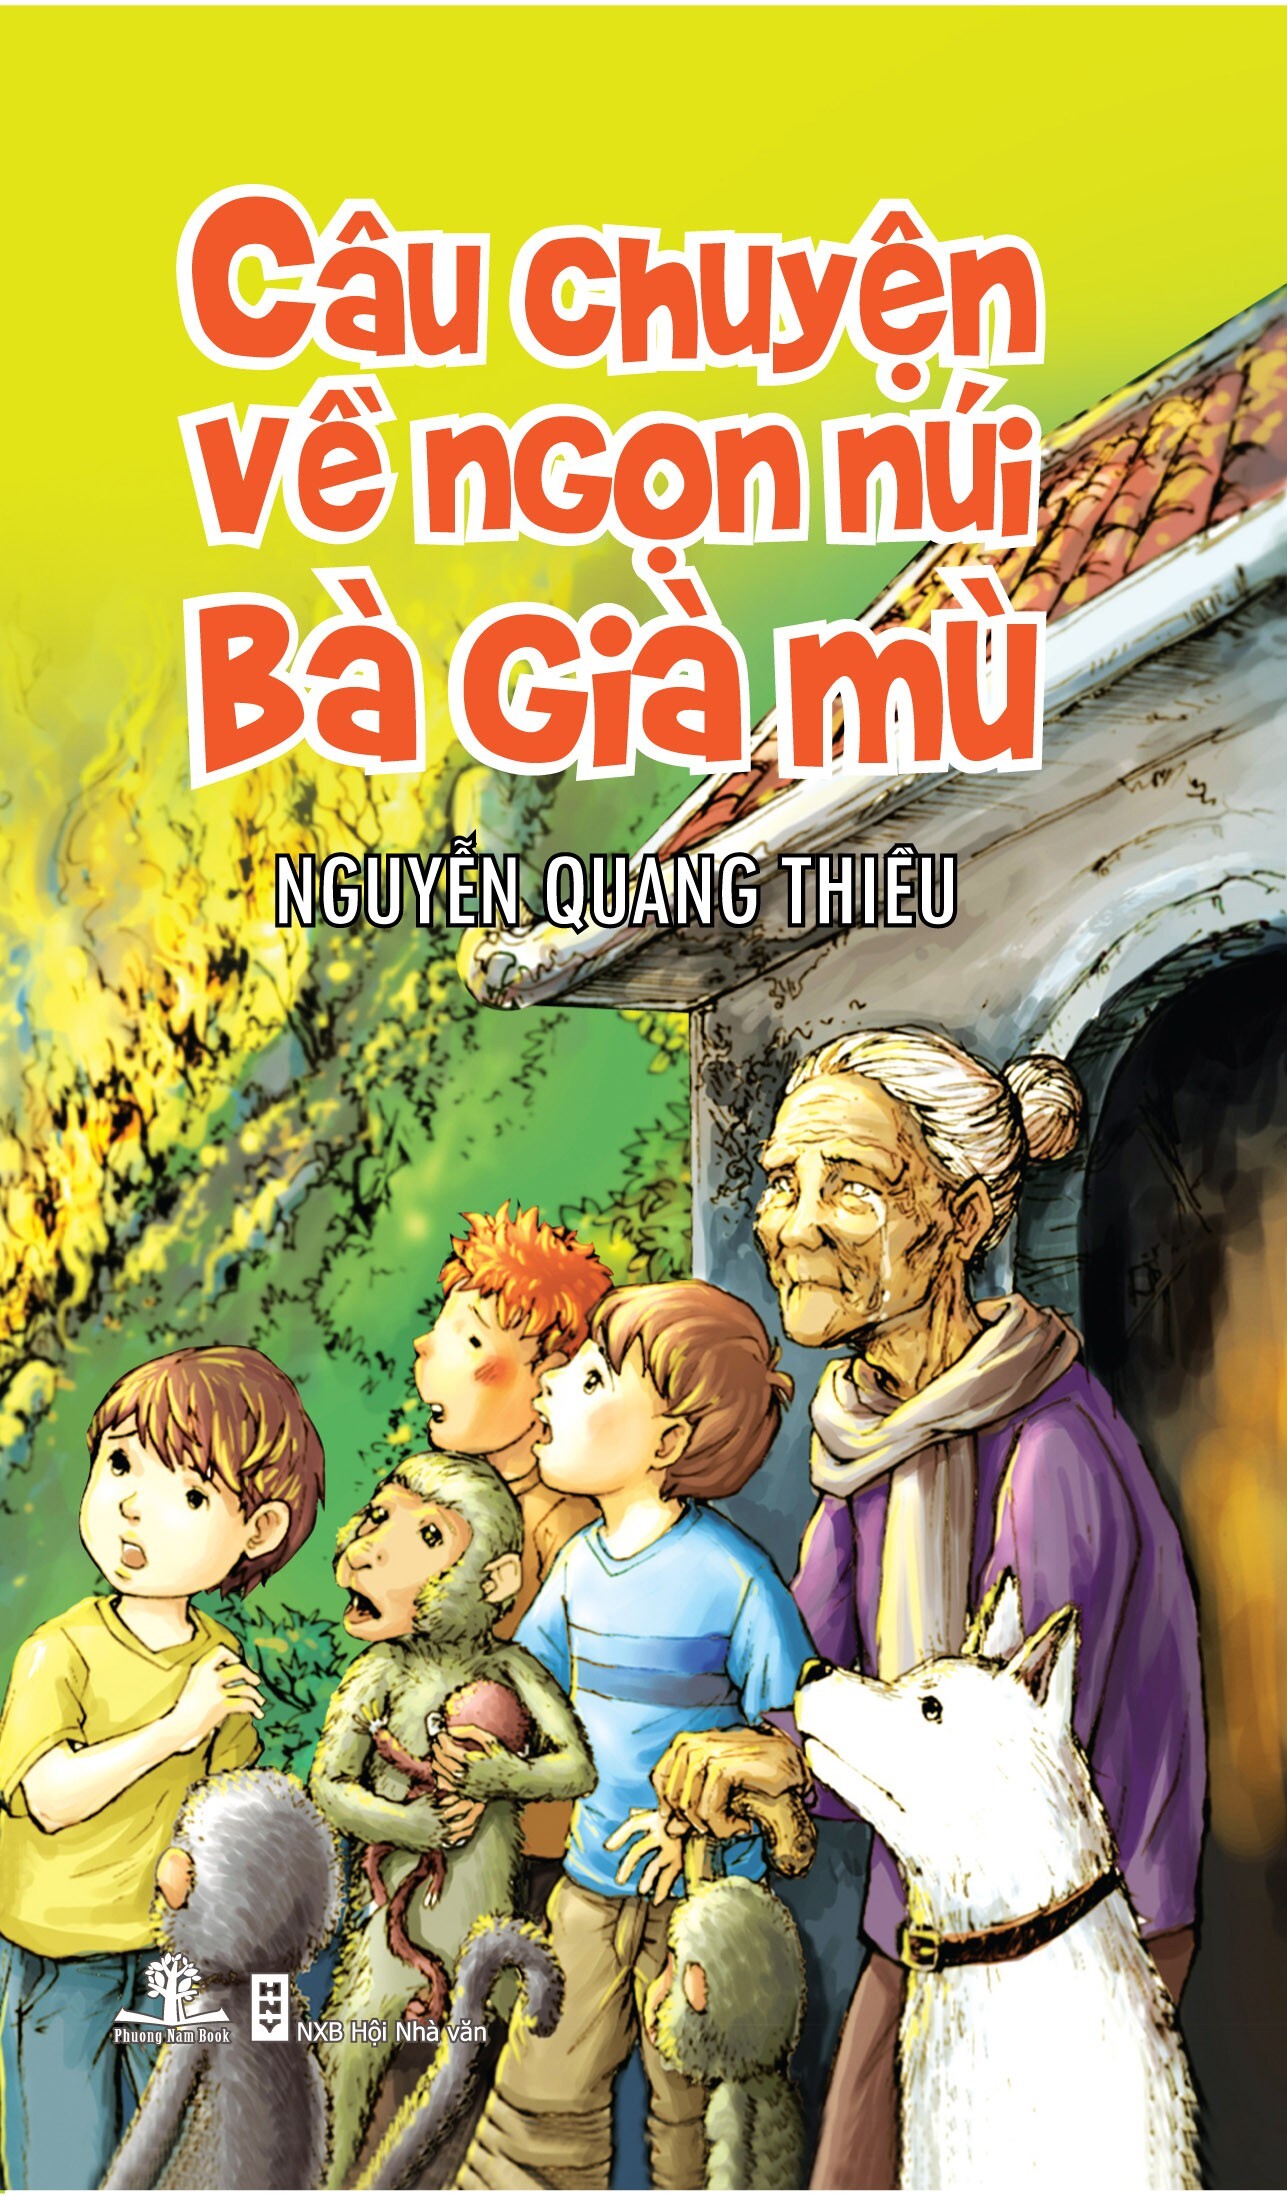 Câu chuyện về ngọn núi bà già mù - Nguyễn Quang Thiều